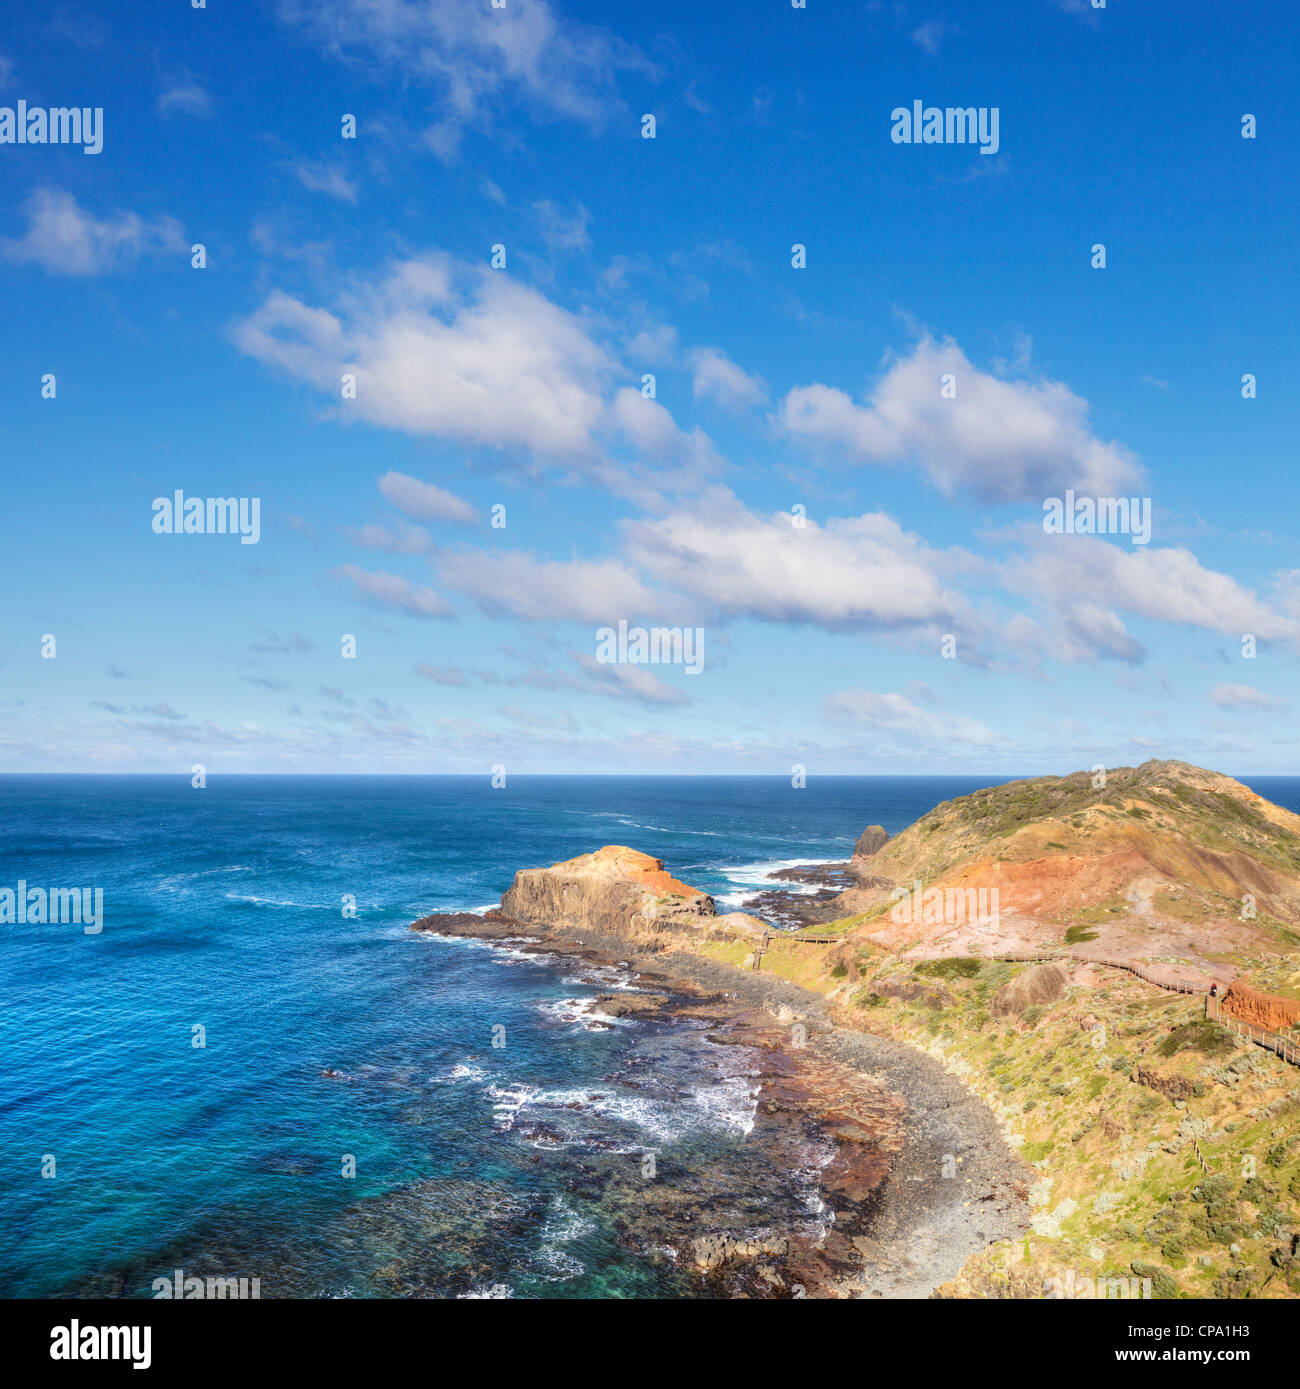 Einem hellen und luftigen Tag am Kap Schanck, der südlichsten Spitze der Mornington Peninsula in Victoria, Australien Stockfoto